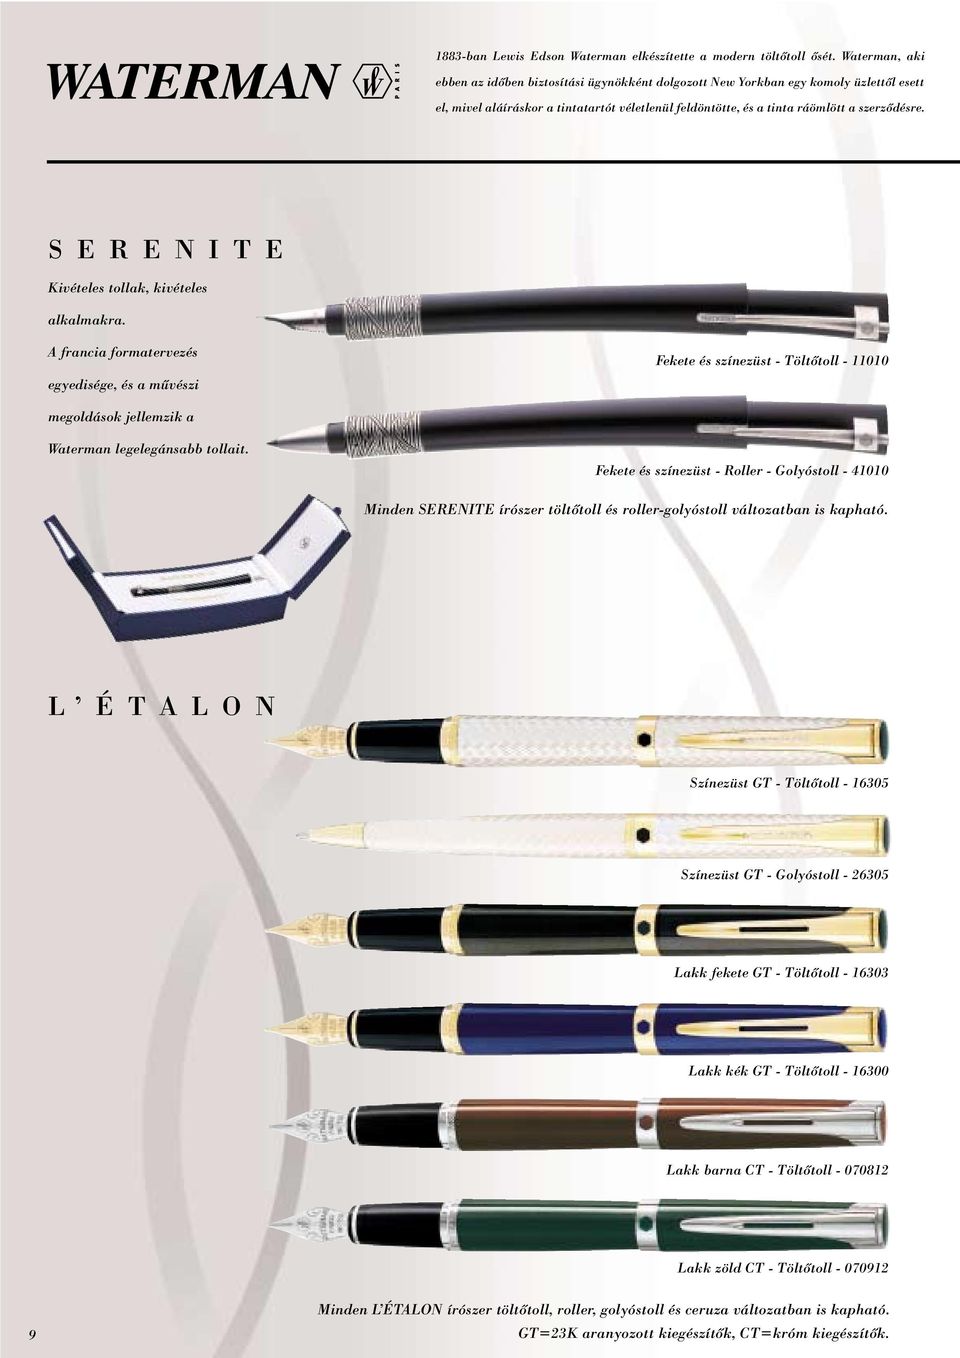 S E R E N I T E Kivételes tollak, kivételes alkalmakra. A francia formatervezés egyedisége, és a mûvészi Fekete és színezüst - Töltôtoll - 11010 megoldások jellemzik a Waterman legelegánsabb tollait.